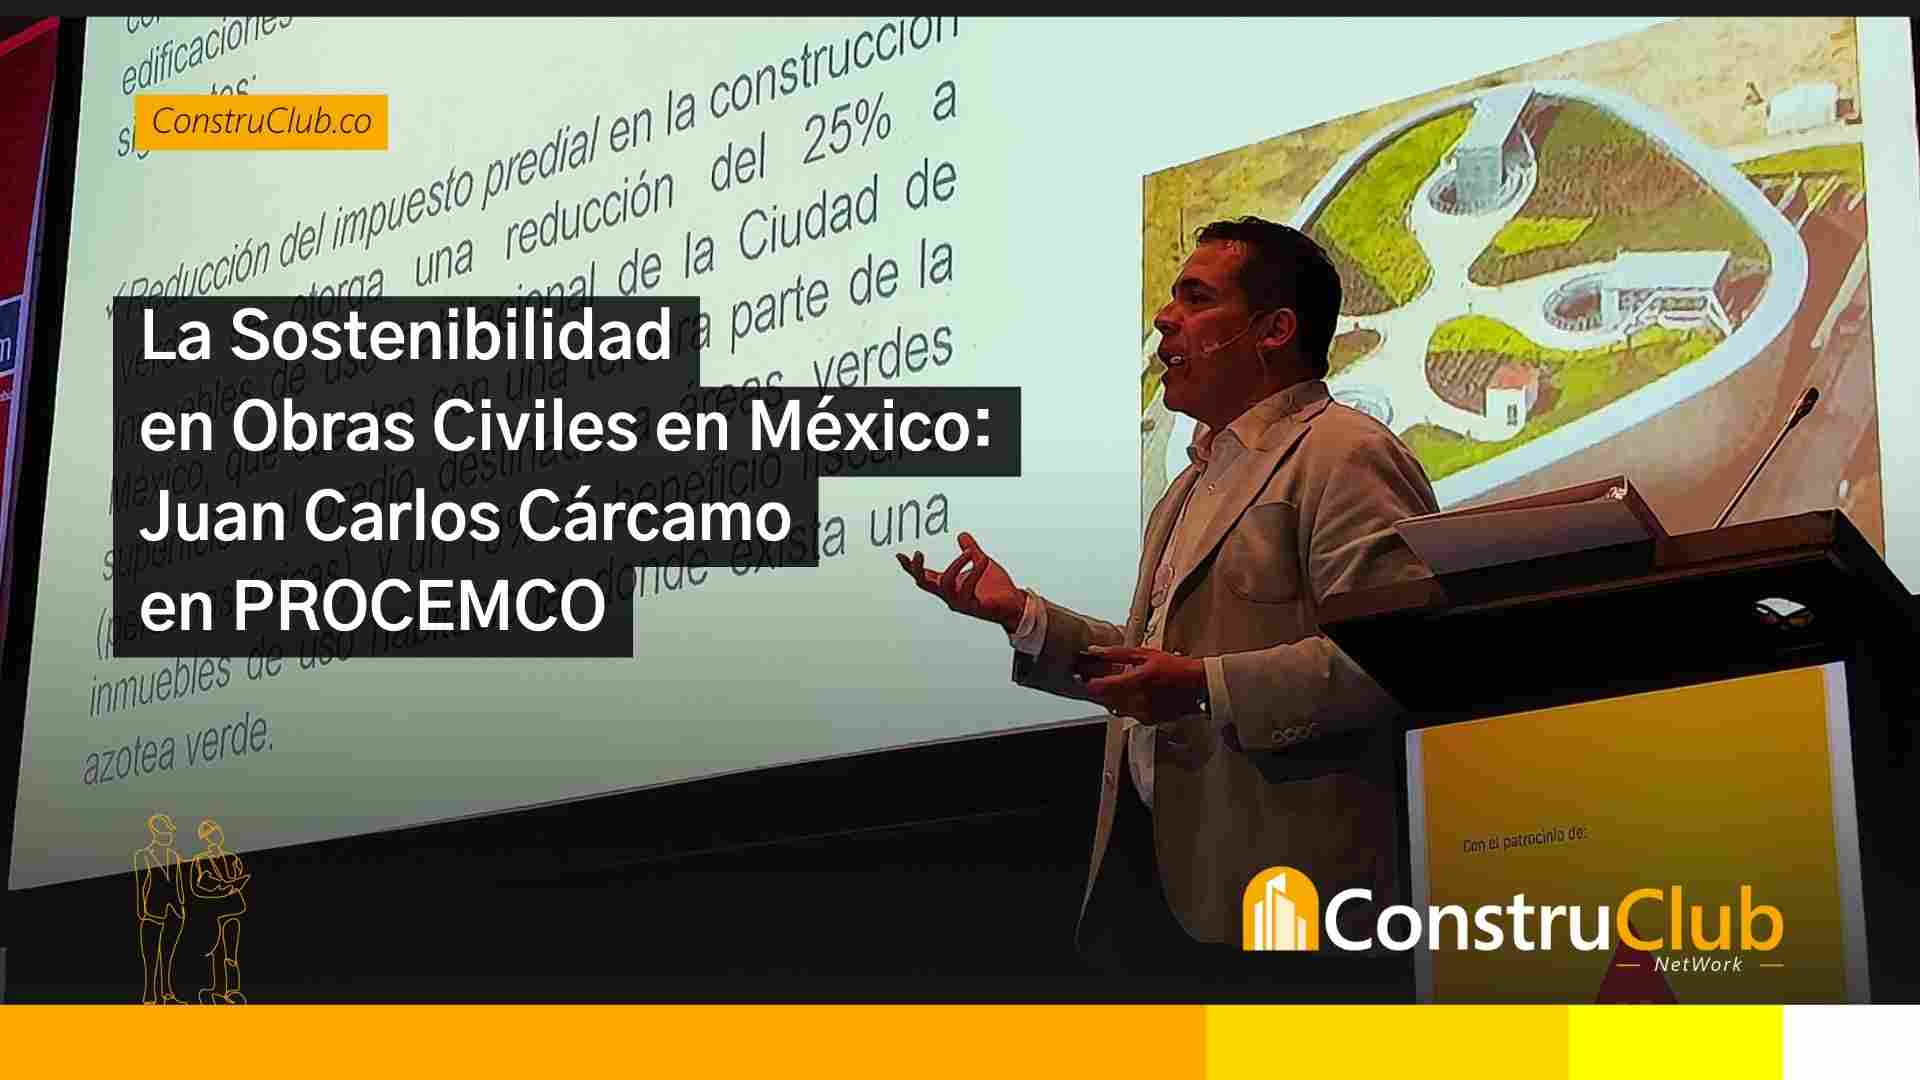 La Sostenibilidad en Obras Civiles en México: Una Charla con Juan Carlos Cárcamo